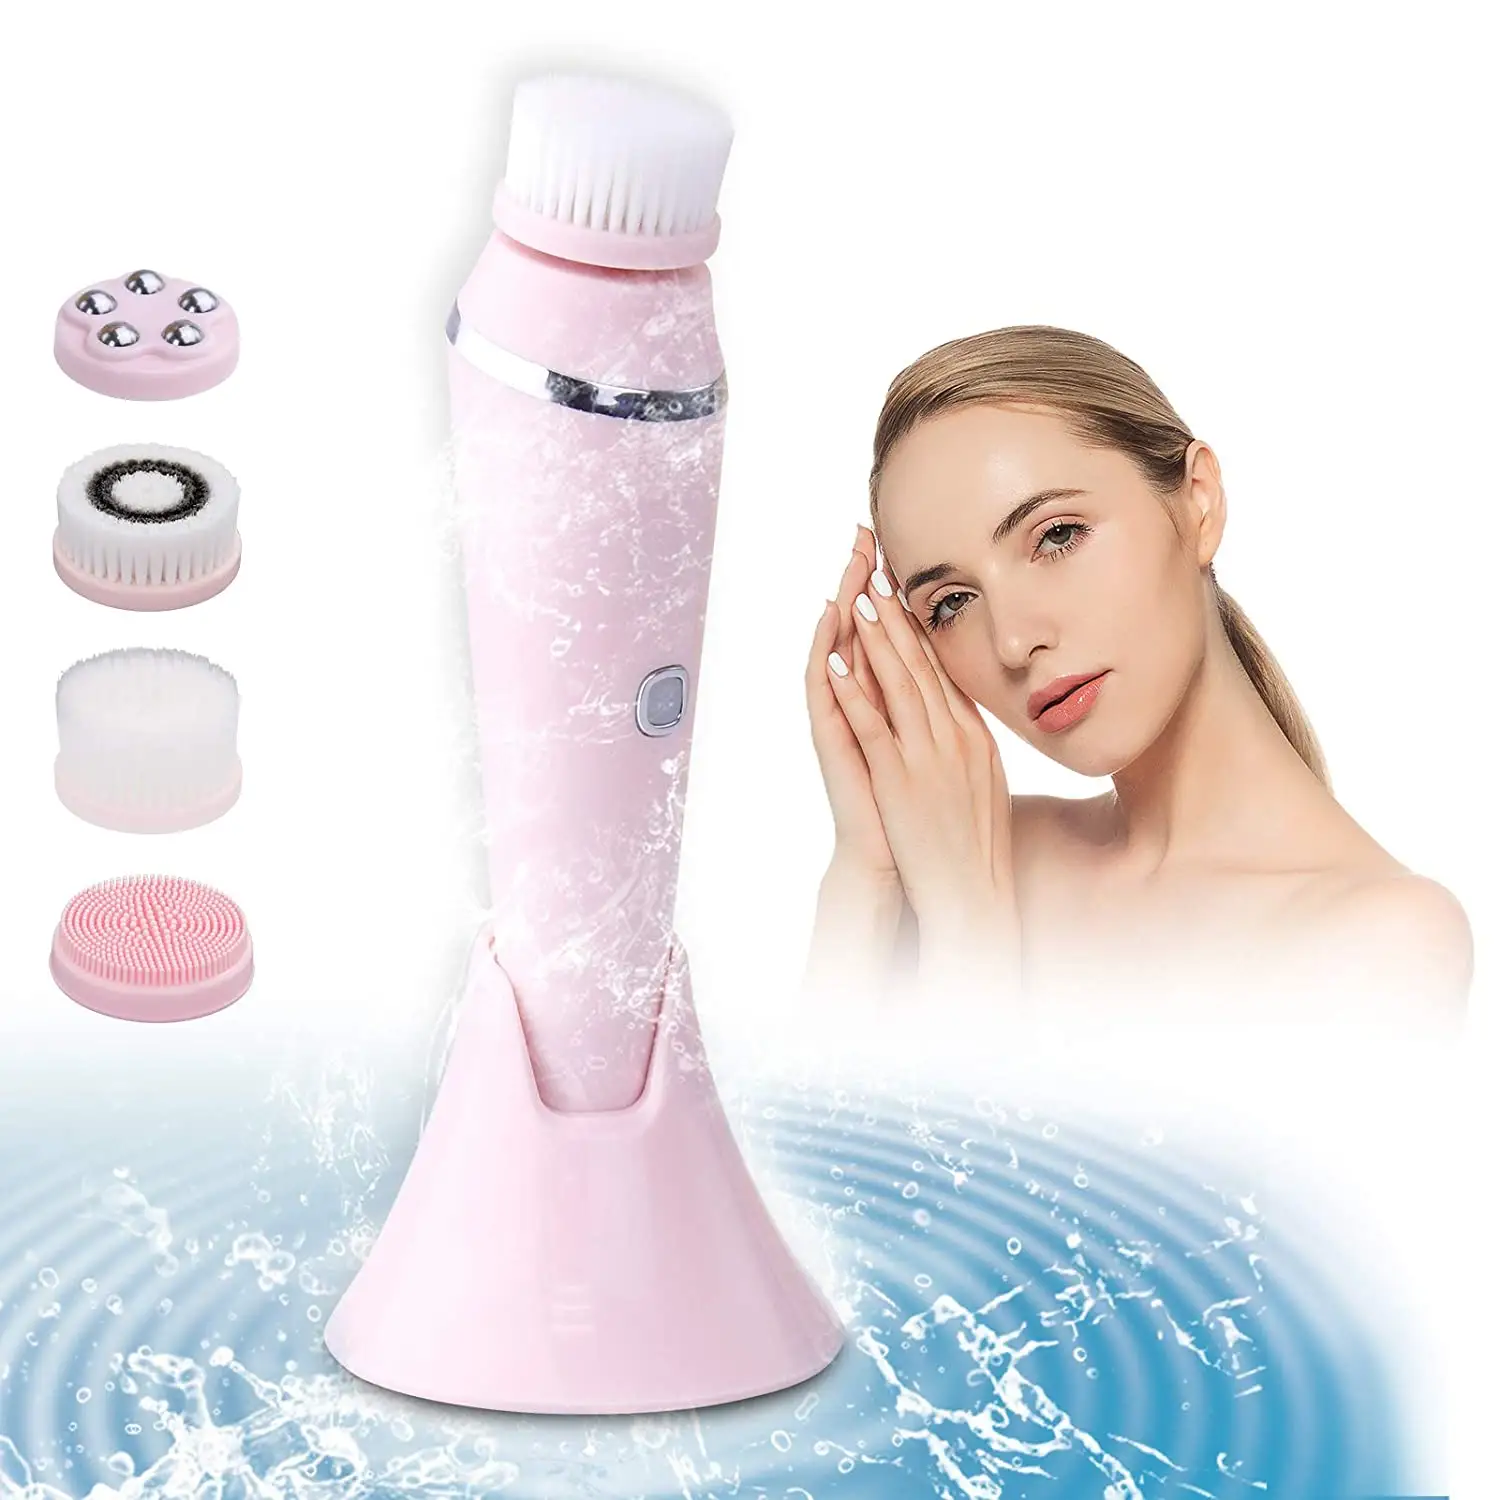 Elektronische Gesichts-Spa-Haut massage Elektrisch rotierende wiederauf ladbare Gesichts reinigungs bürste Set 4 In 1